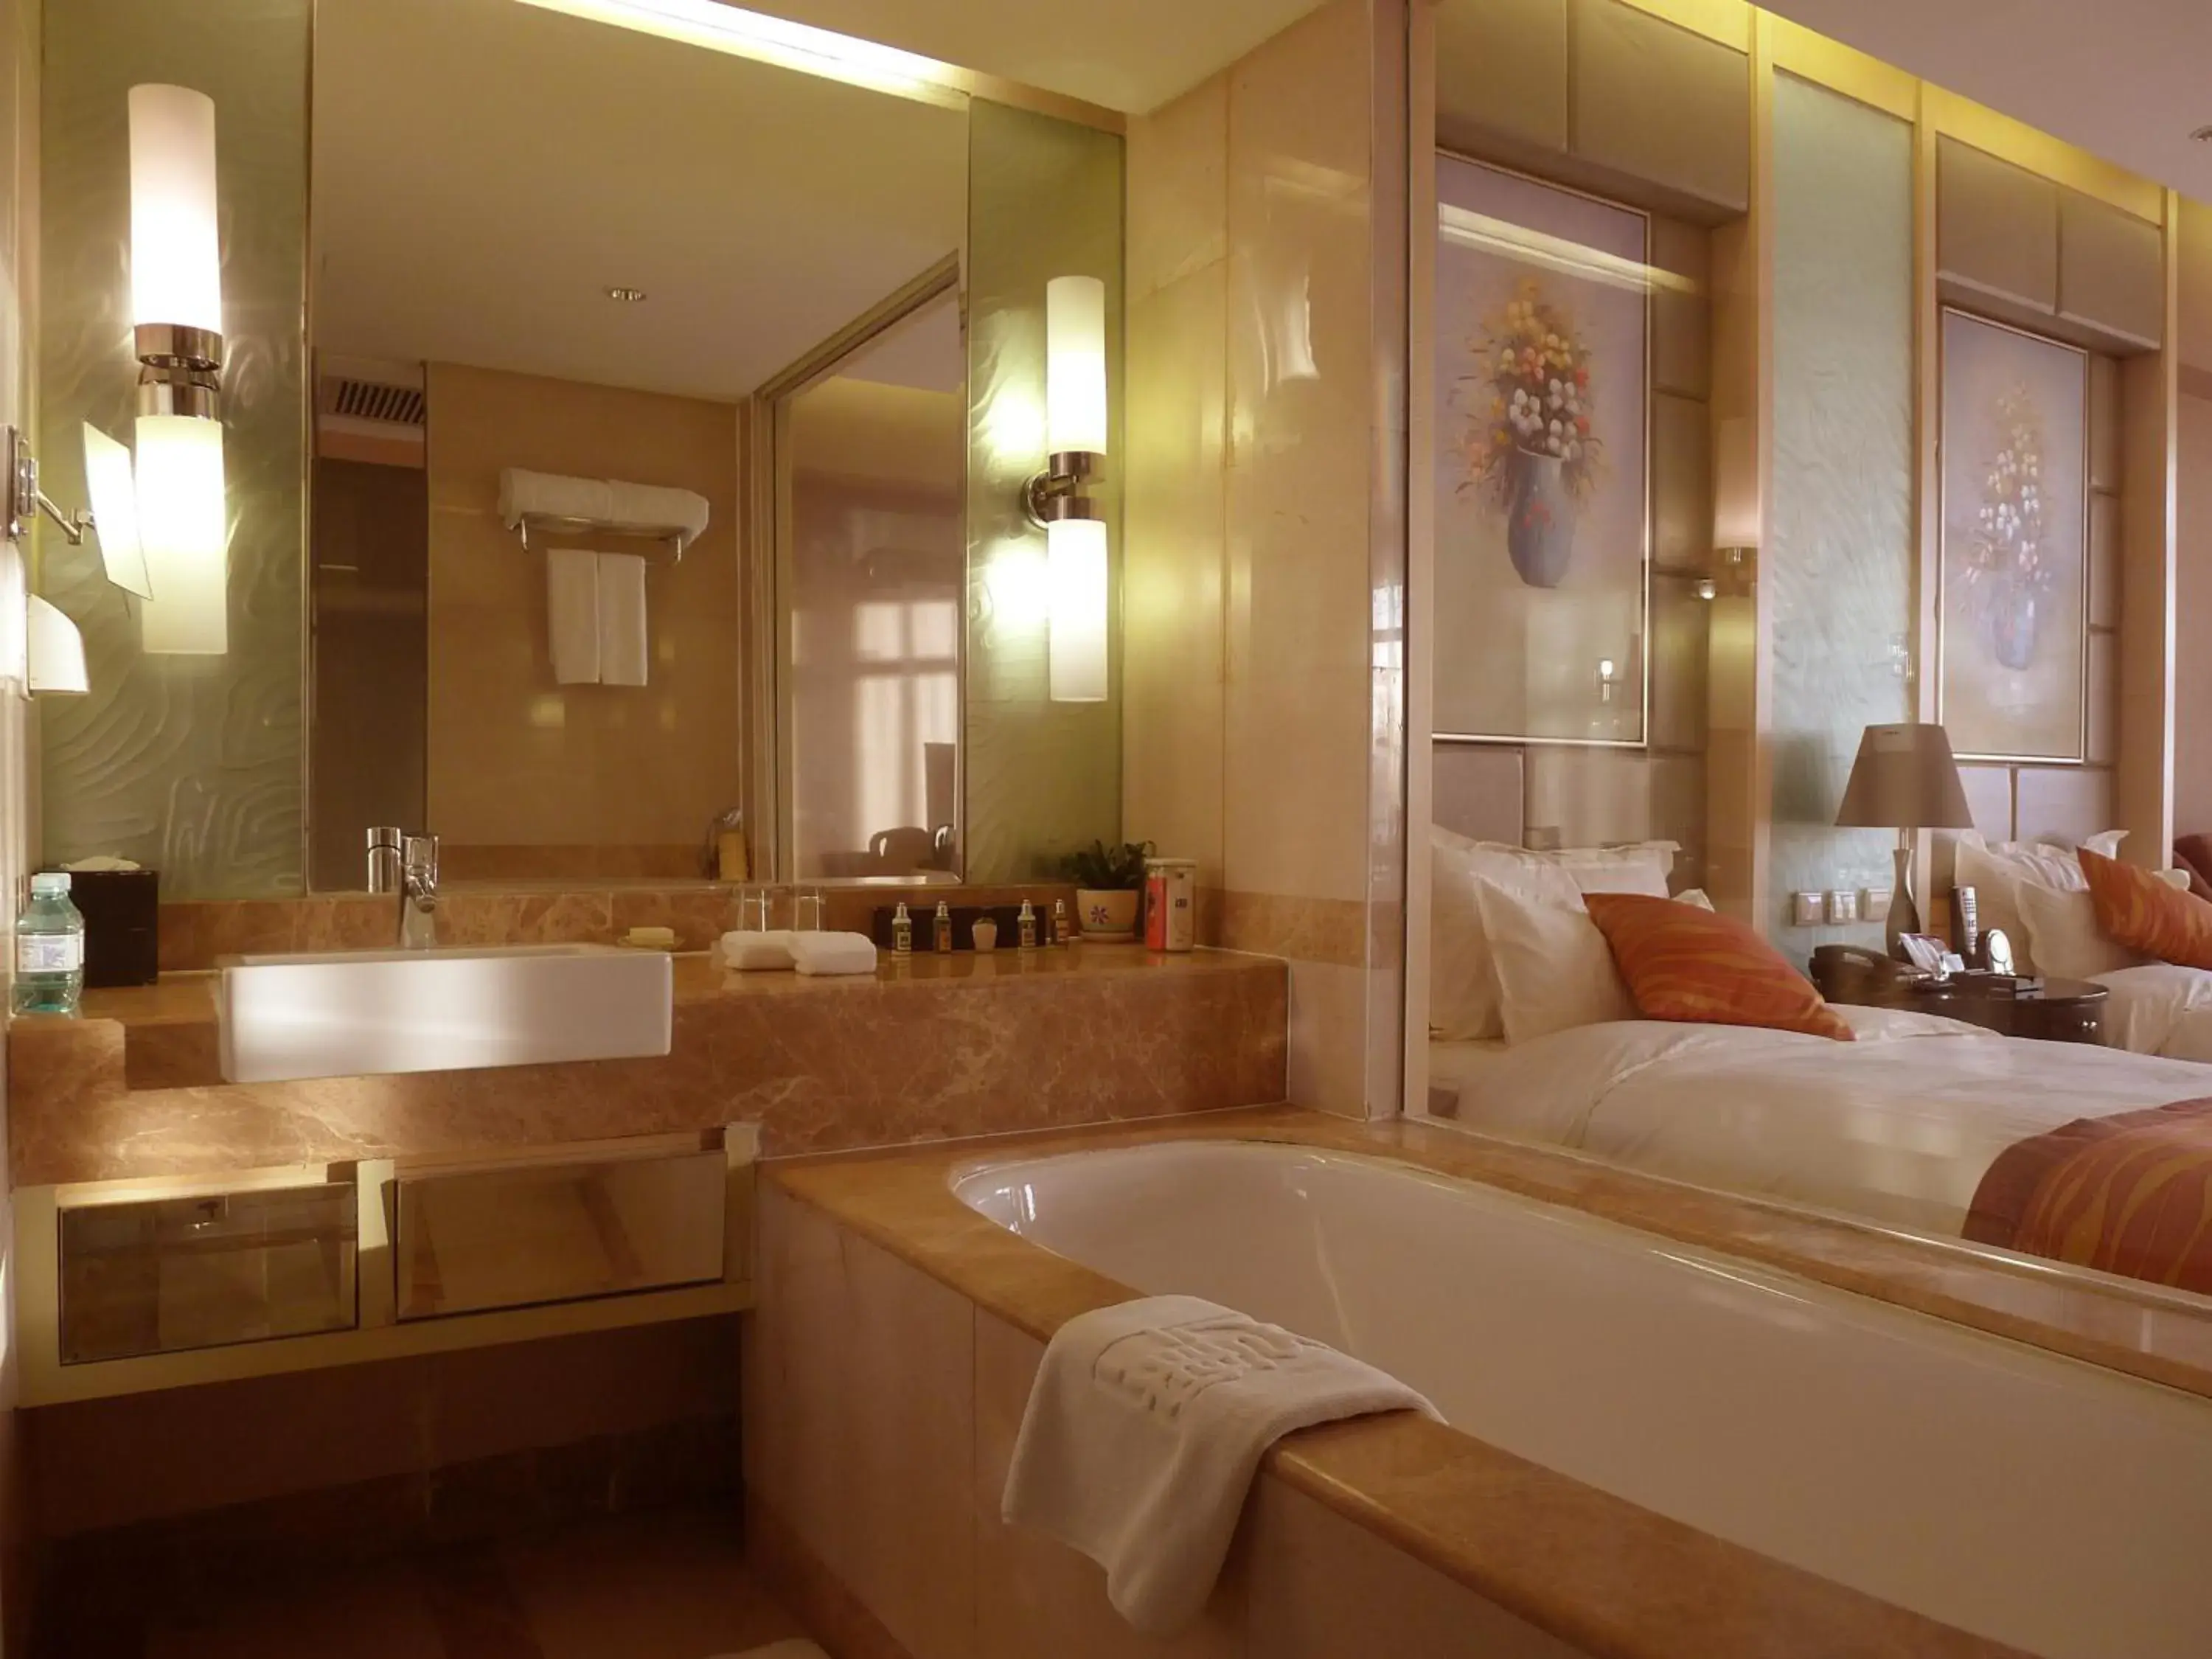 Bathroom in Wenjin Hotel, Beijing